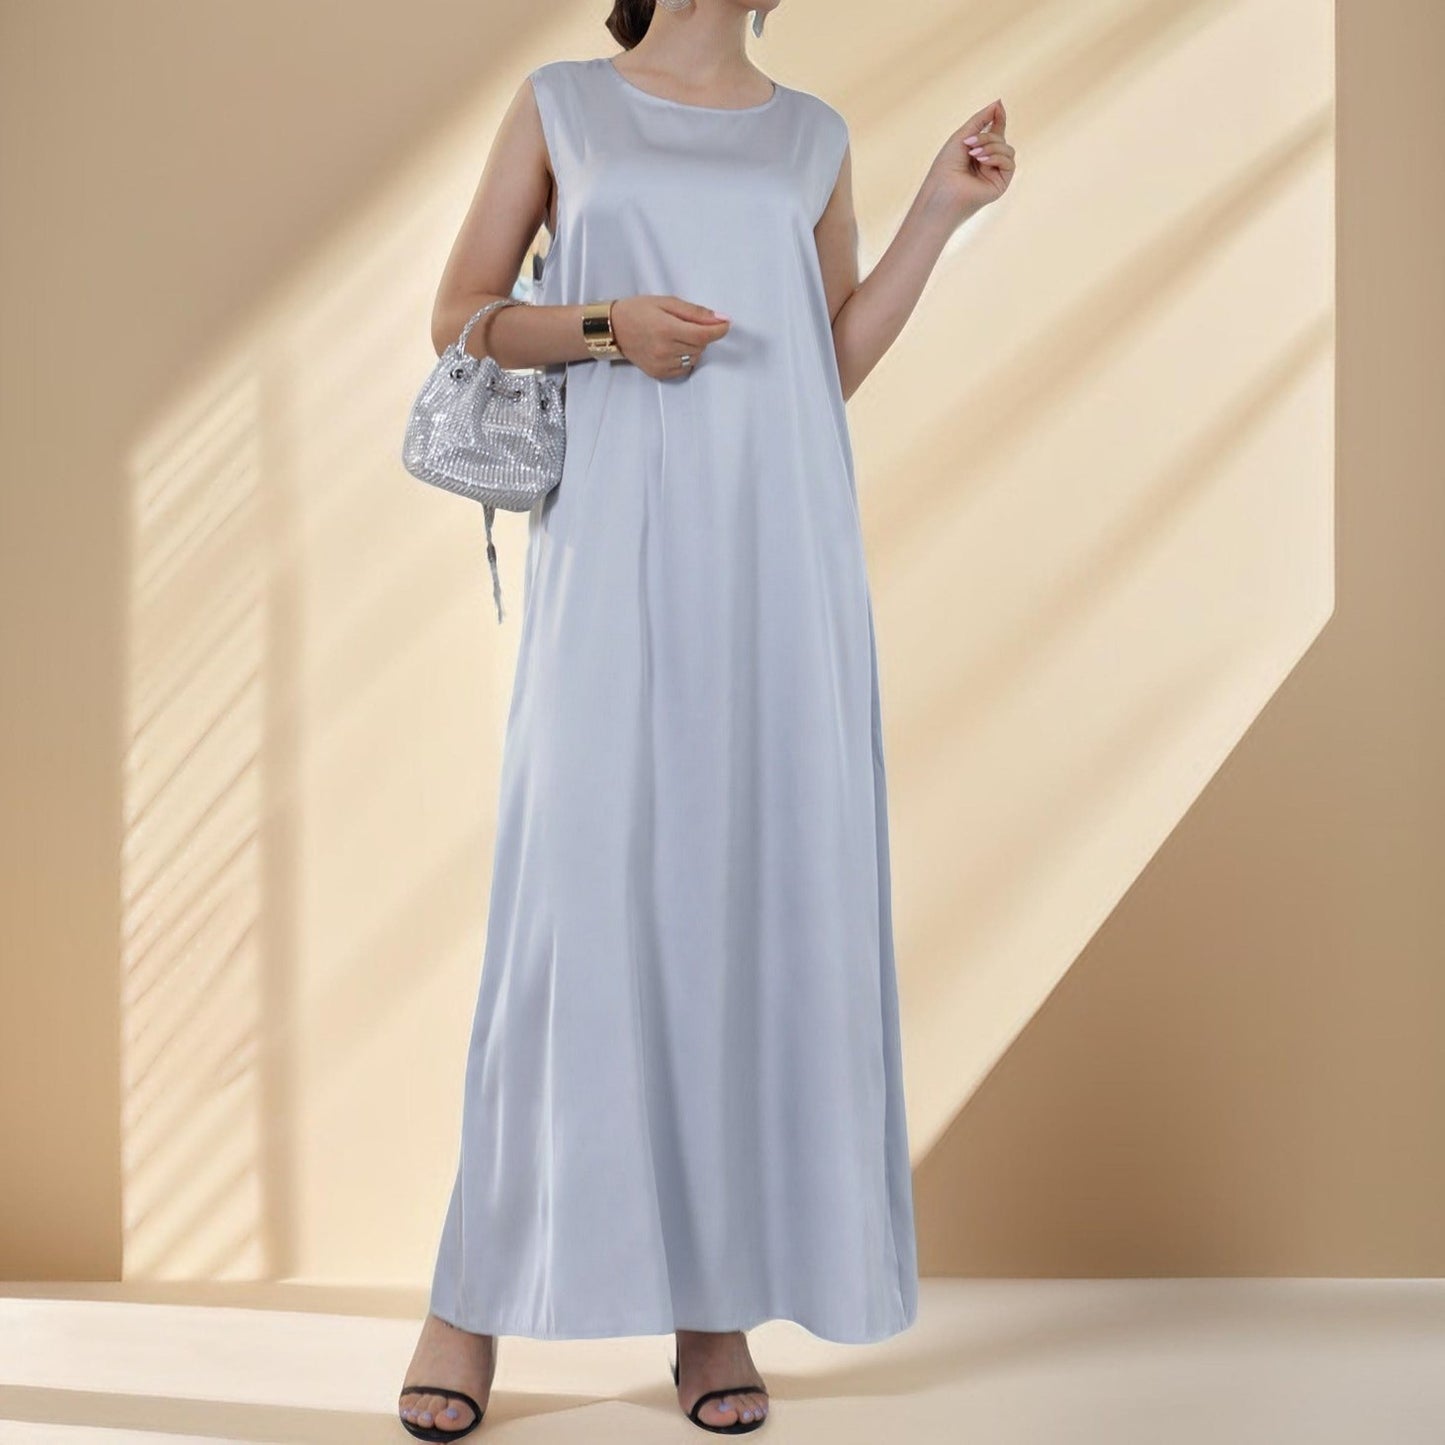 Silky Inner wear slip dress - Try Modest Limited 